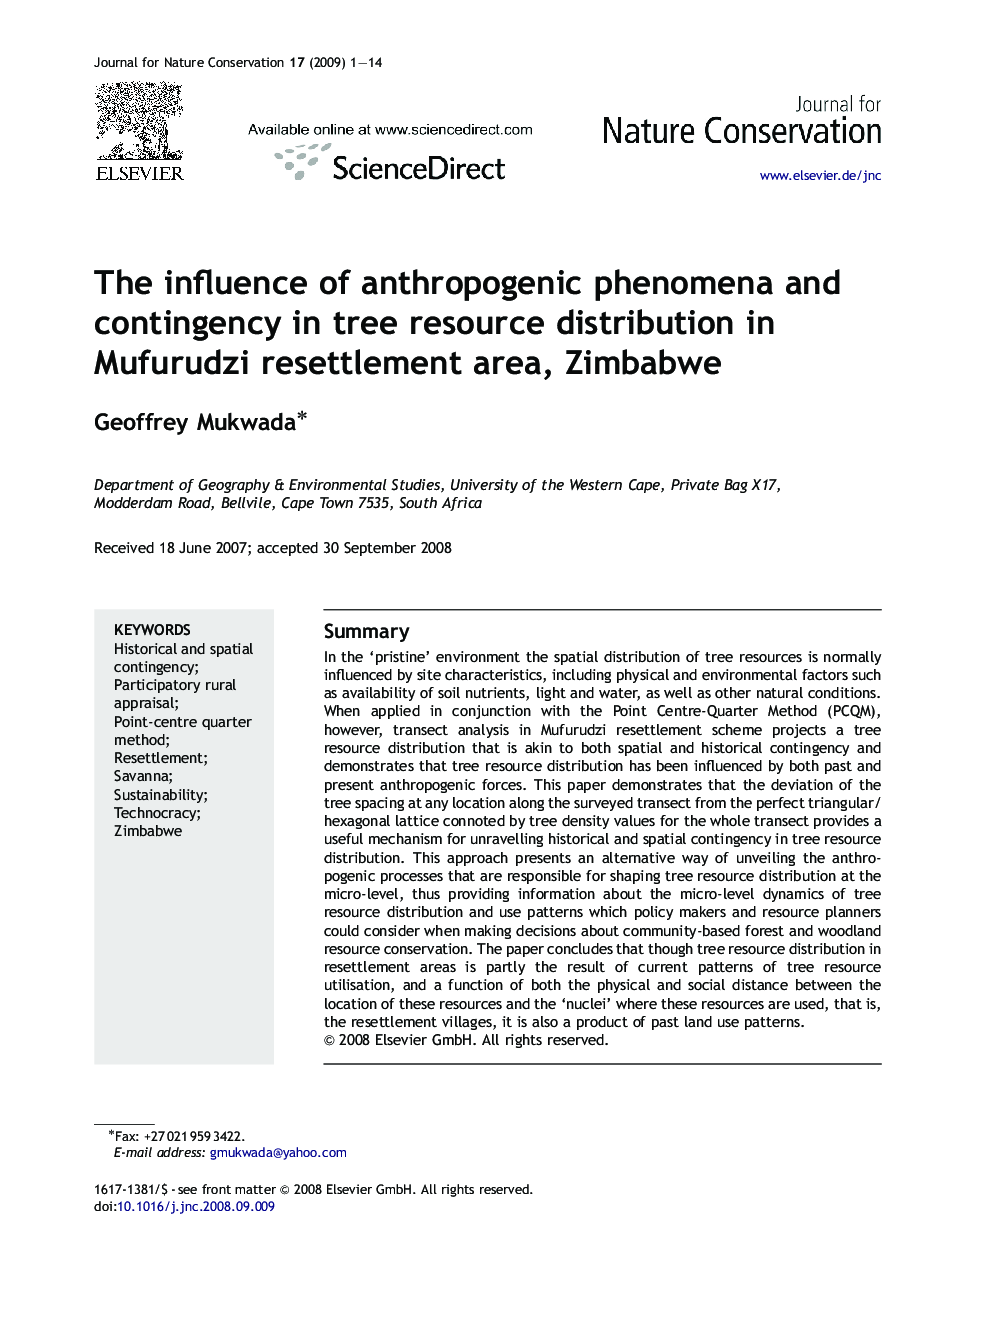 The influence of anthropogenic phenomena and contingency in tree resource distribution in Mufurudzi resettlement area, Zimbabwe